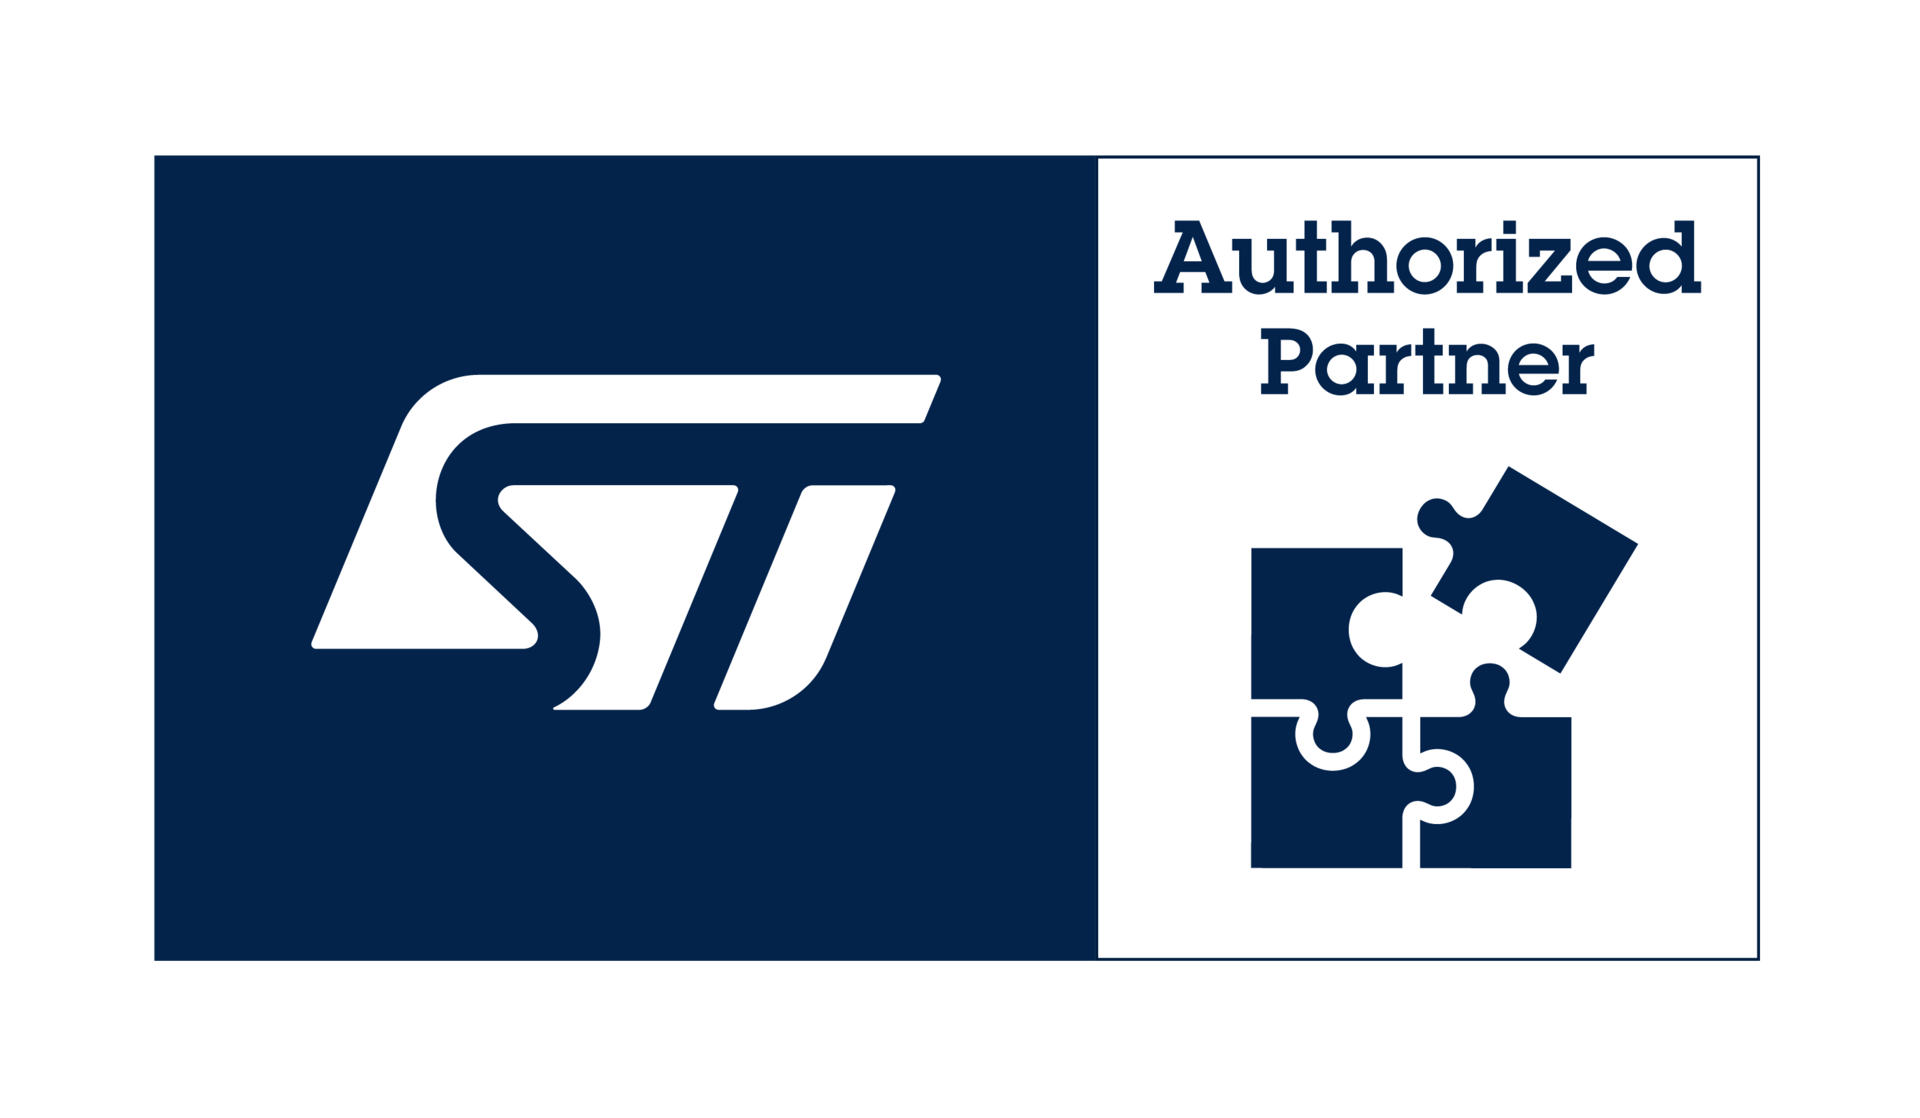 Authorized Partner Logo - Dedicated partner page